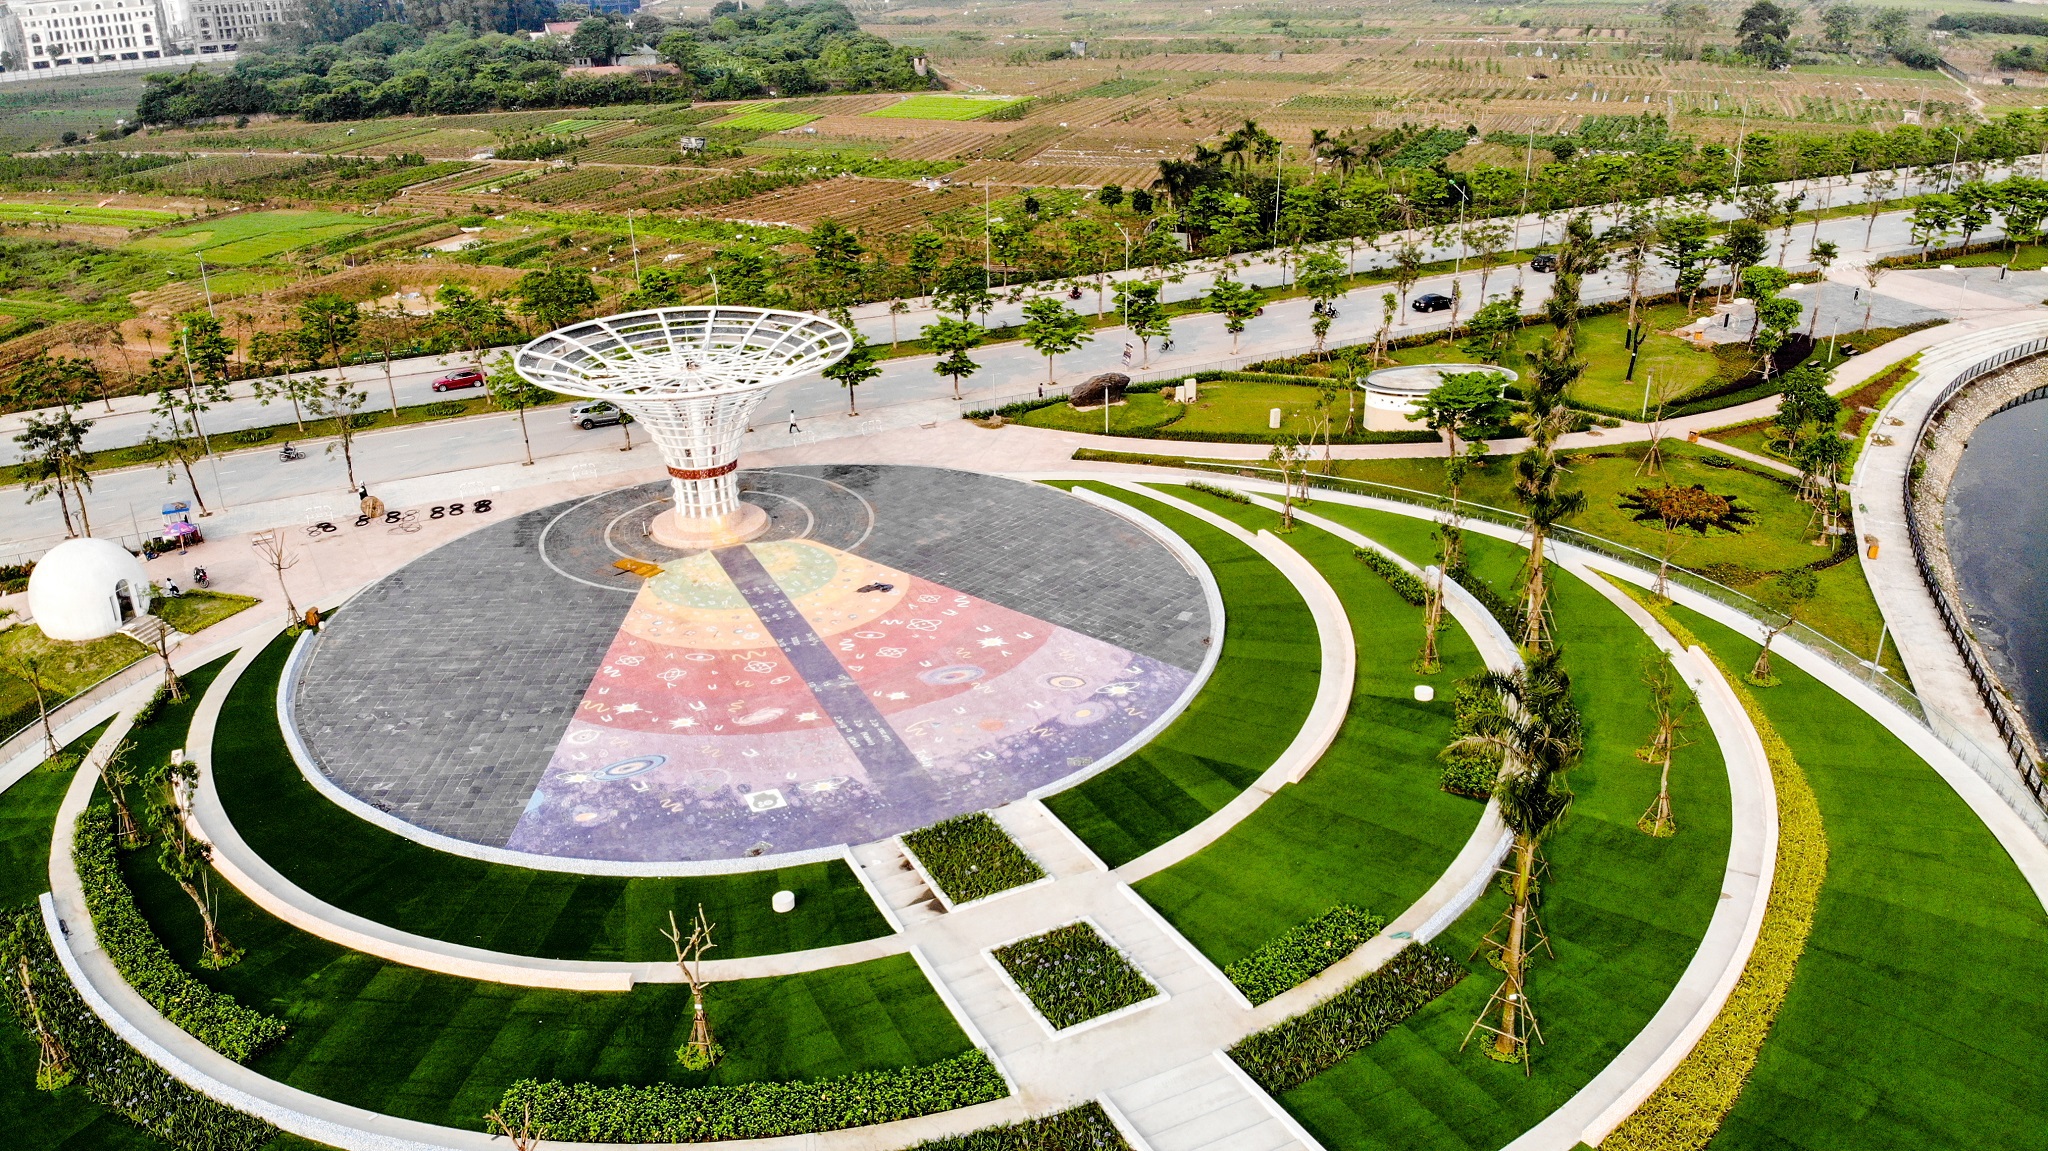 Hanoi astronomy park nears completion